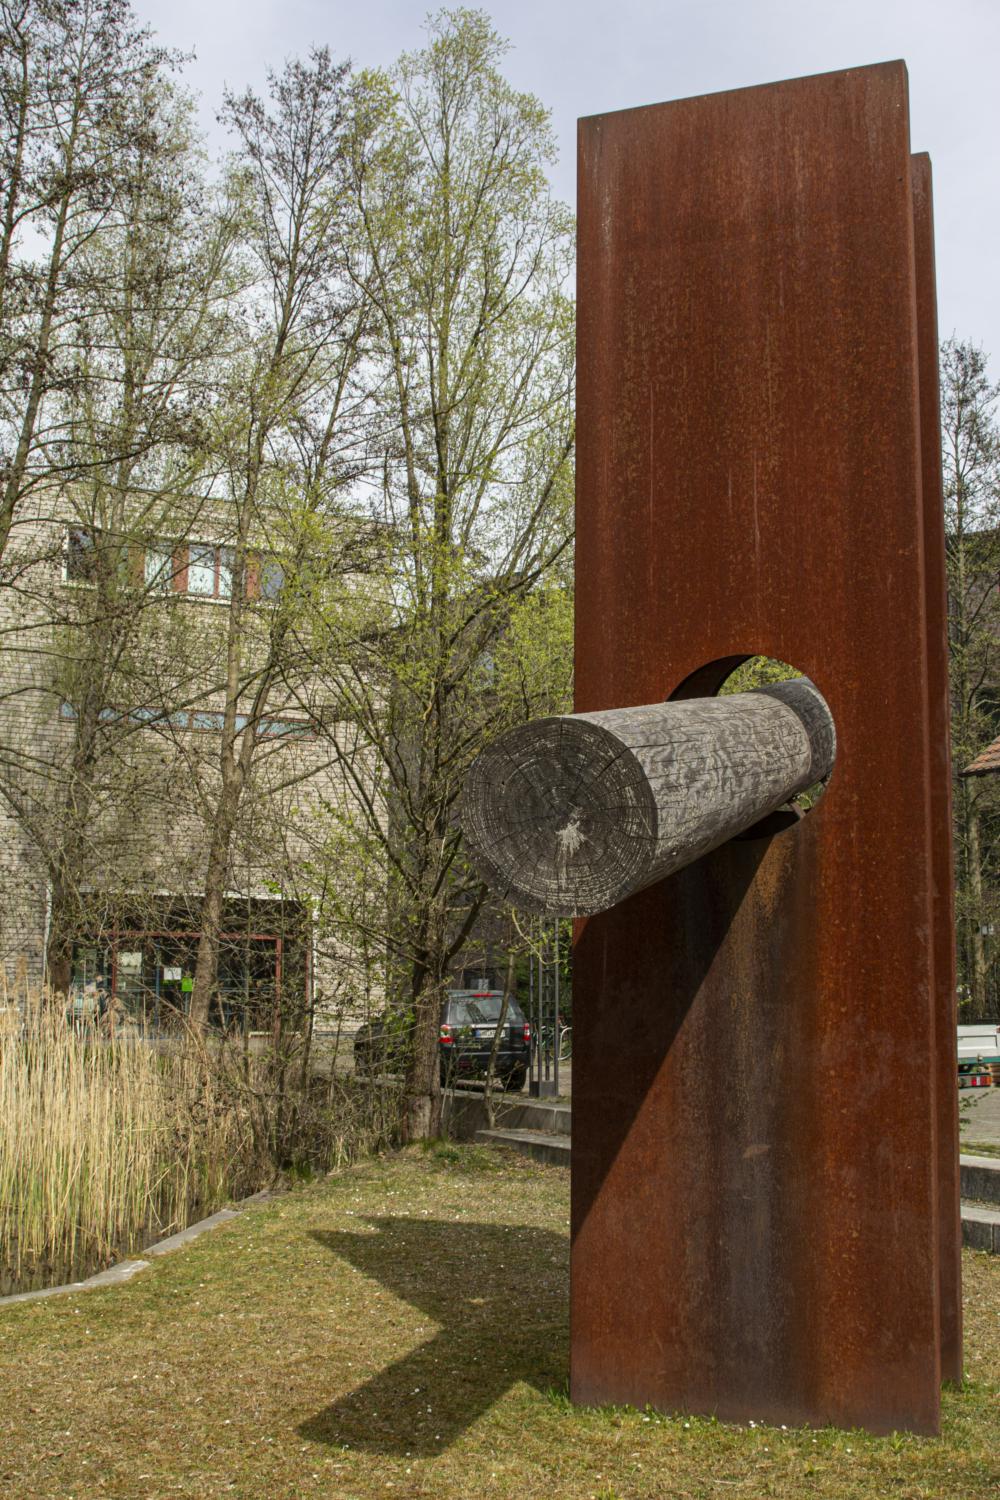 Abb. 12: Installation mit Baumstamm auf dem Campus